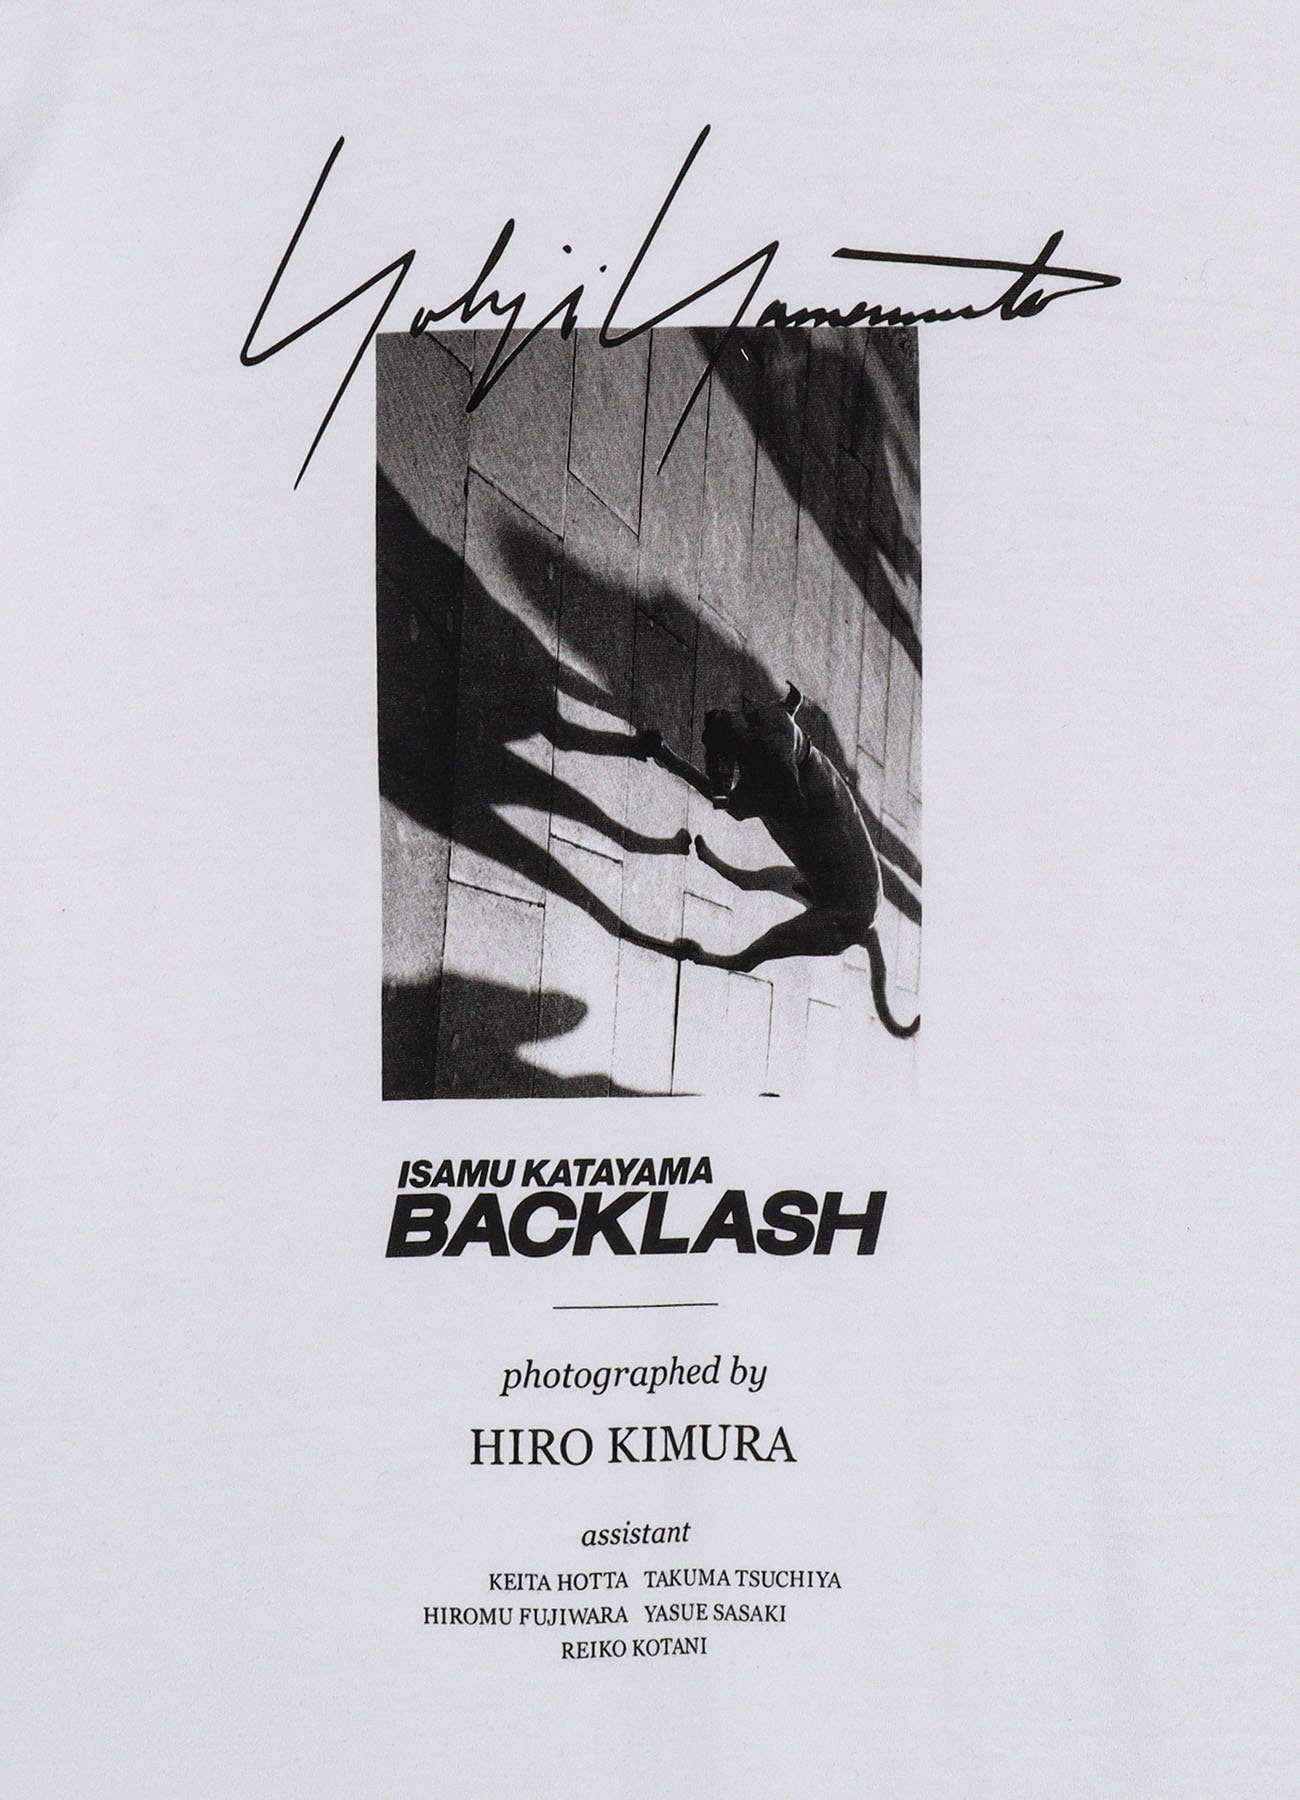 【Launching 10:00(JST), July 23】Yohji Yamamoto X BACKLASH PHOTOGRAPH T-SHIRT